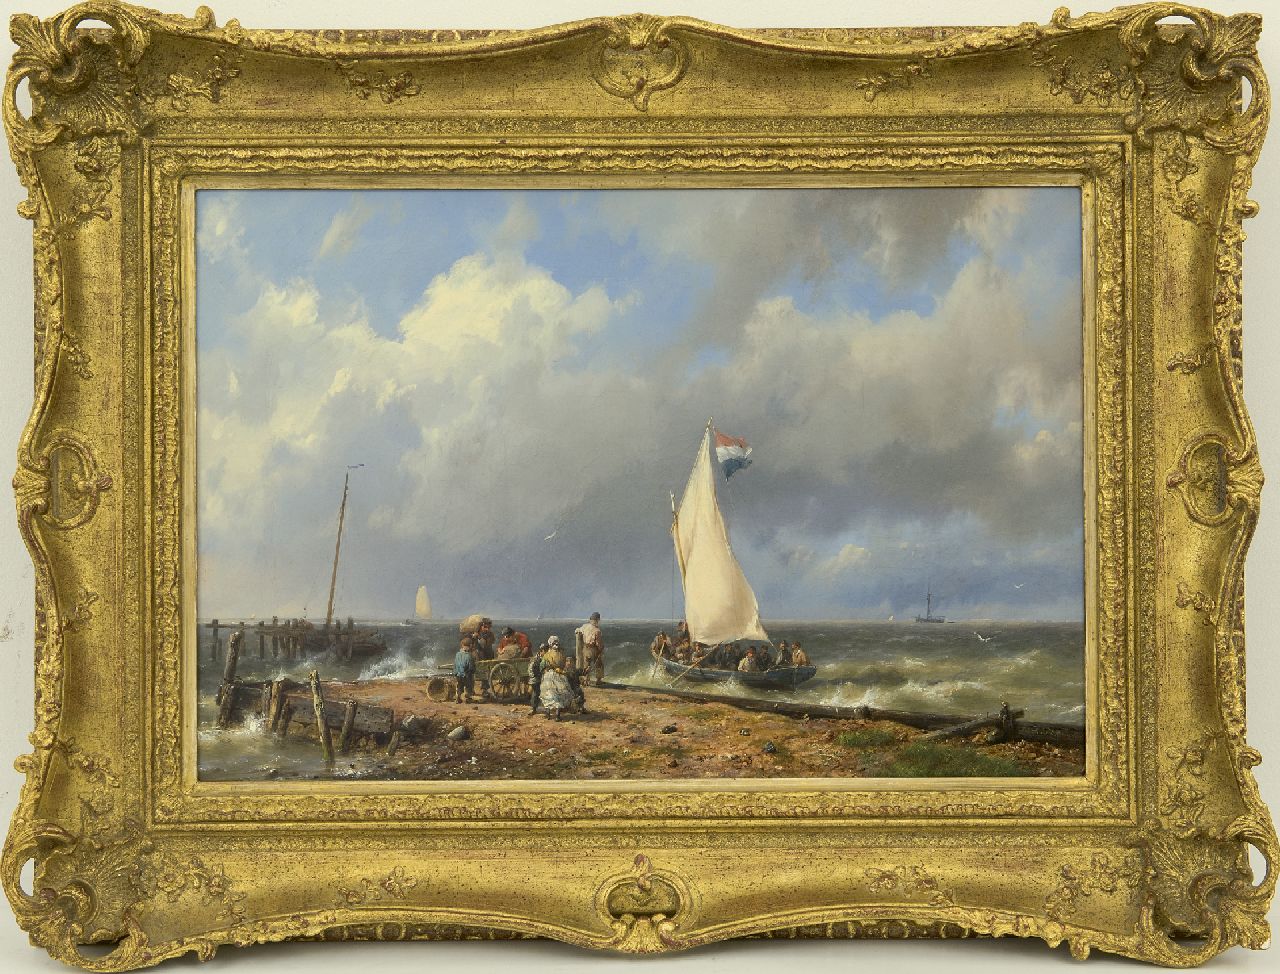 Koekkoek H.  | Hermanus Koekkoek | Schilderijen te koop aangeboden | Vertrekkend zeilschip bij de haveningang, olieverf op doek 32,1 x 46,9 cm, gesigneerd rechtsonder